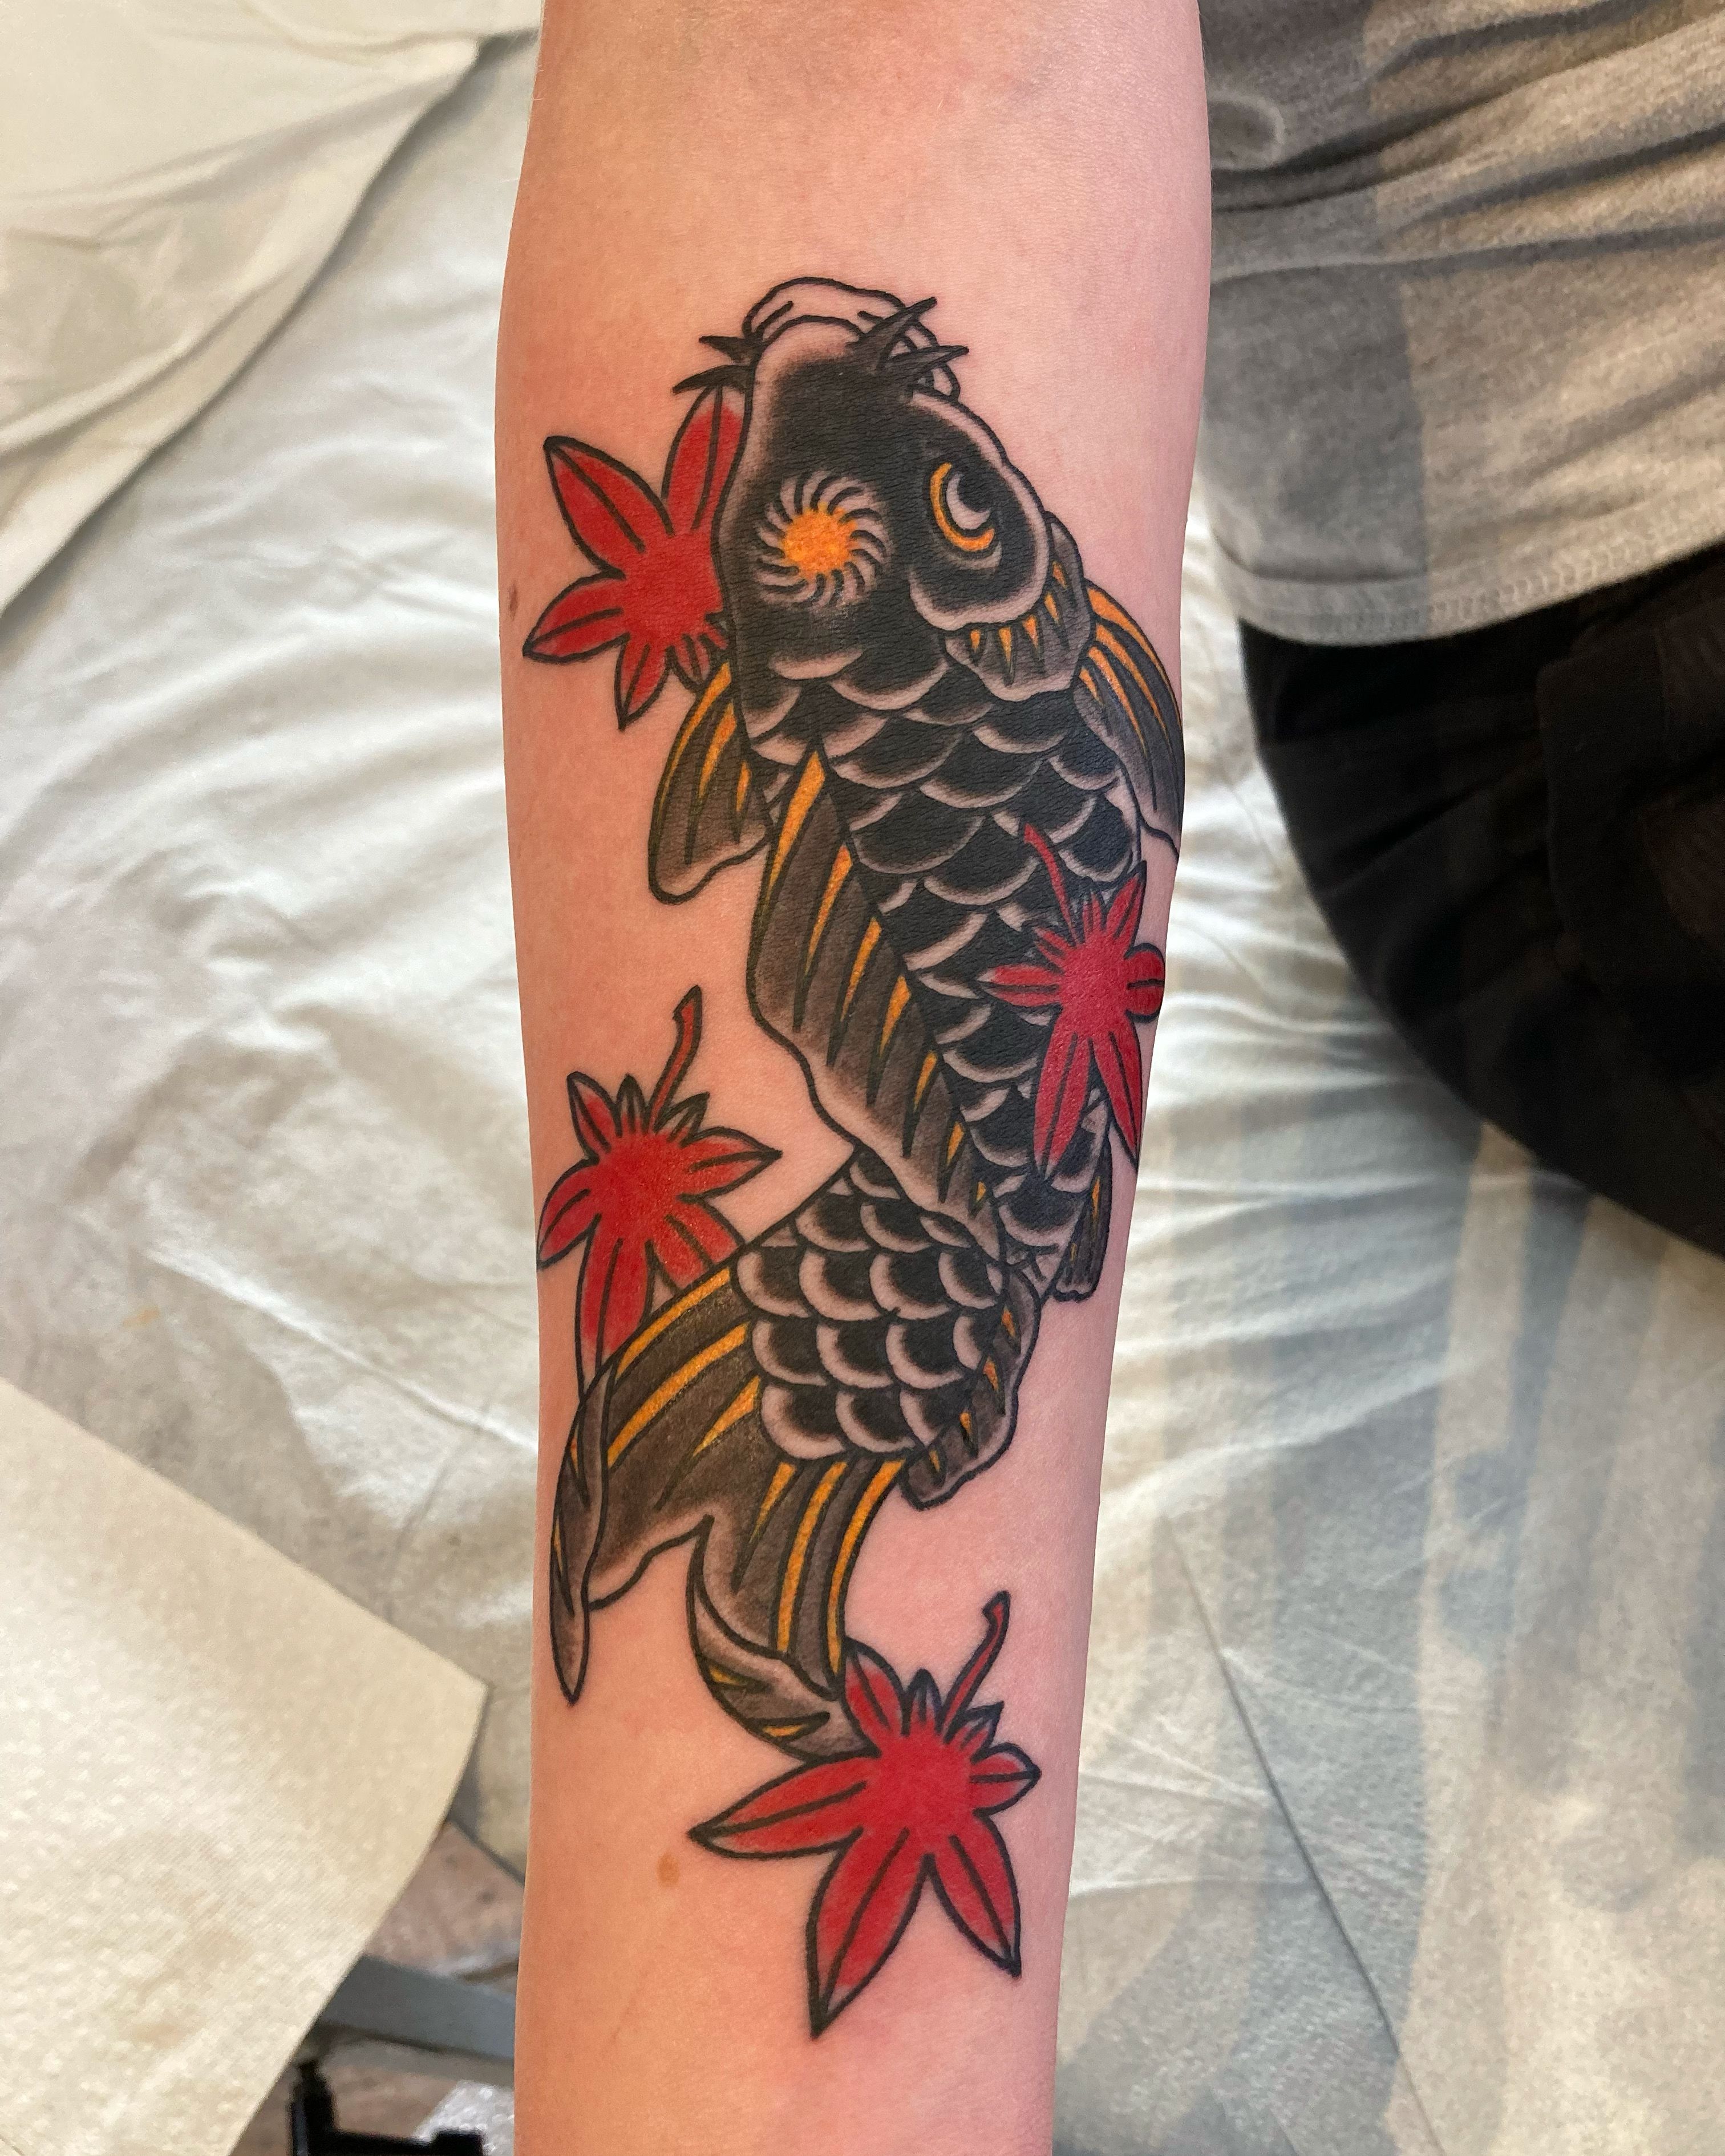 Explore the 50 Best Fish Tattoo Ideas (2021) • Tattoodo